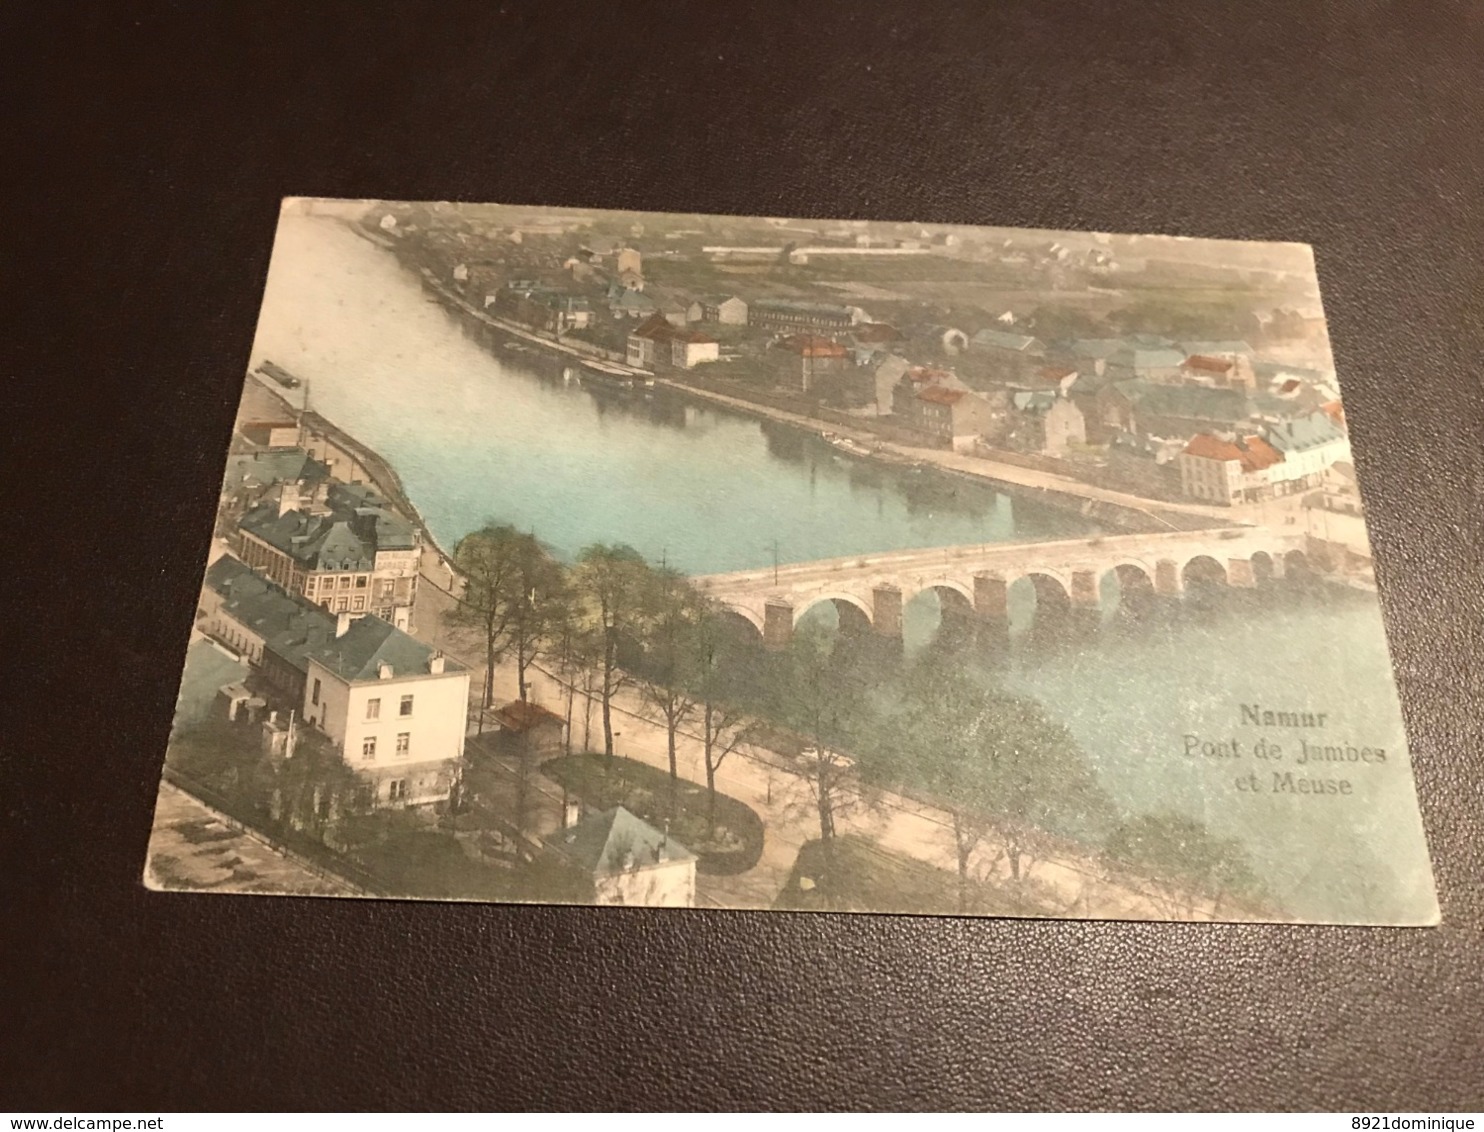 Namur - Namen - Pont De Jambes Et Meuse - Coloré - Voyagé - Namur